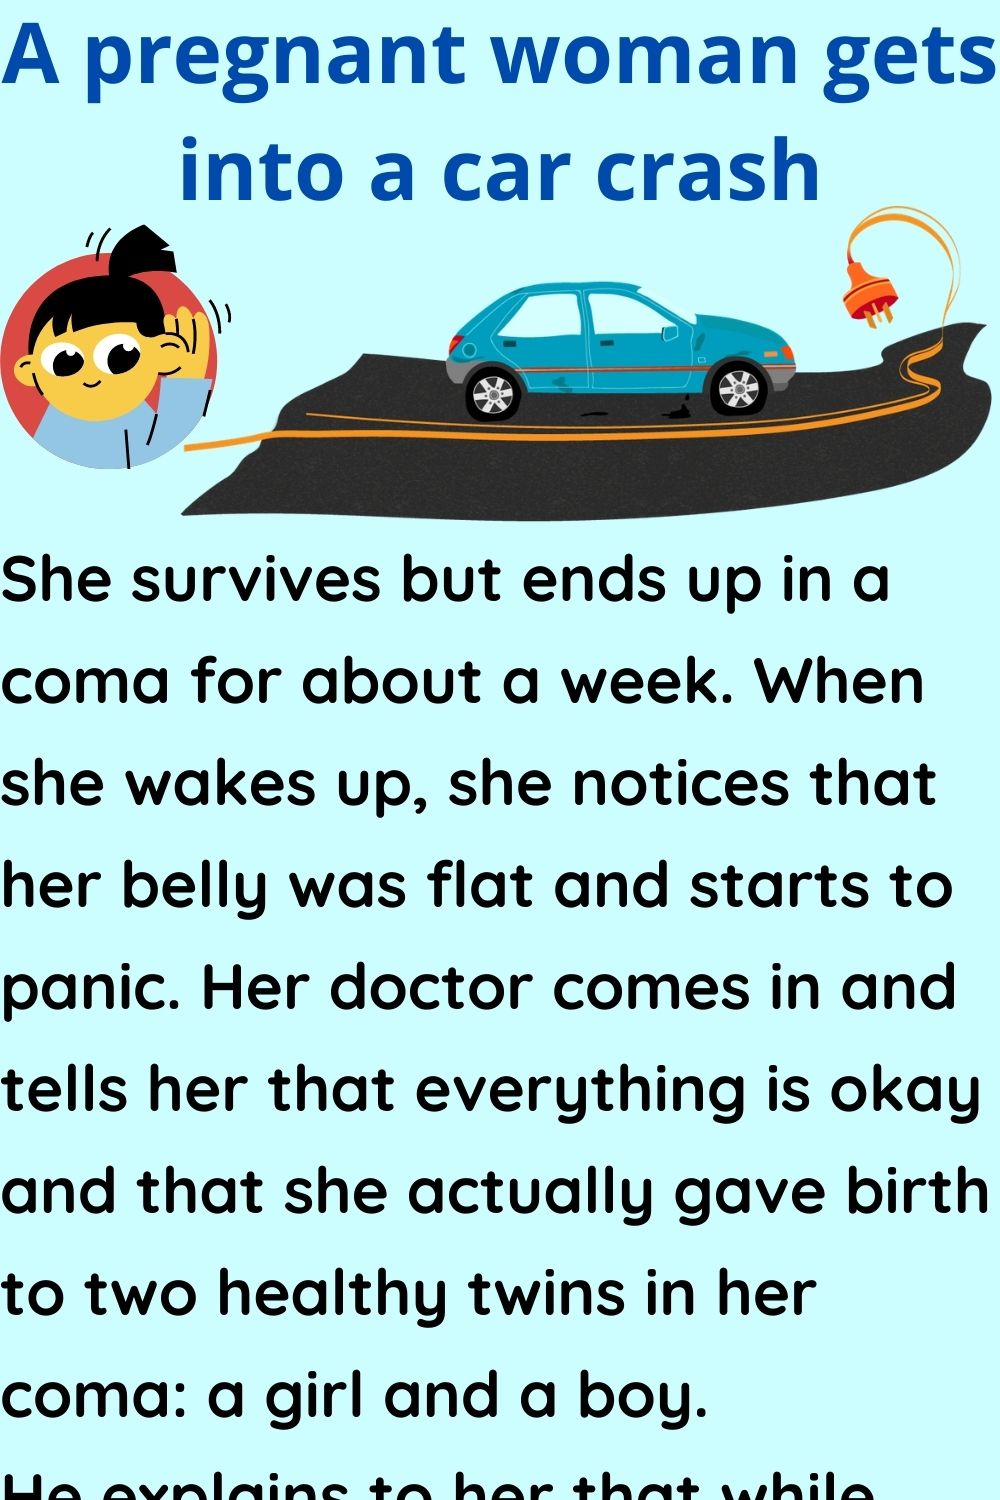 A pregnant woman gets into a car crash